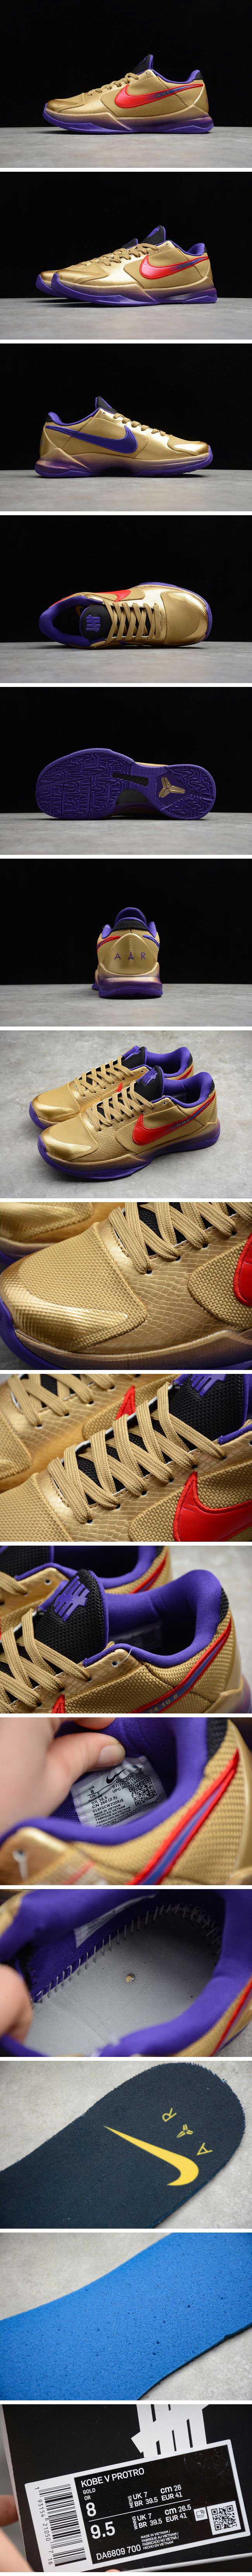 UNDEFEATED × Nike Kobe 5 Protro 